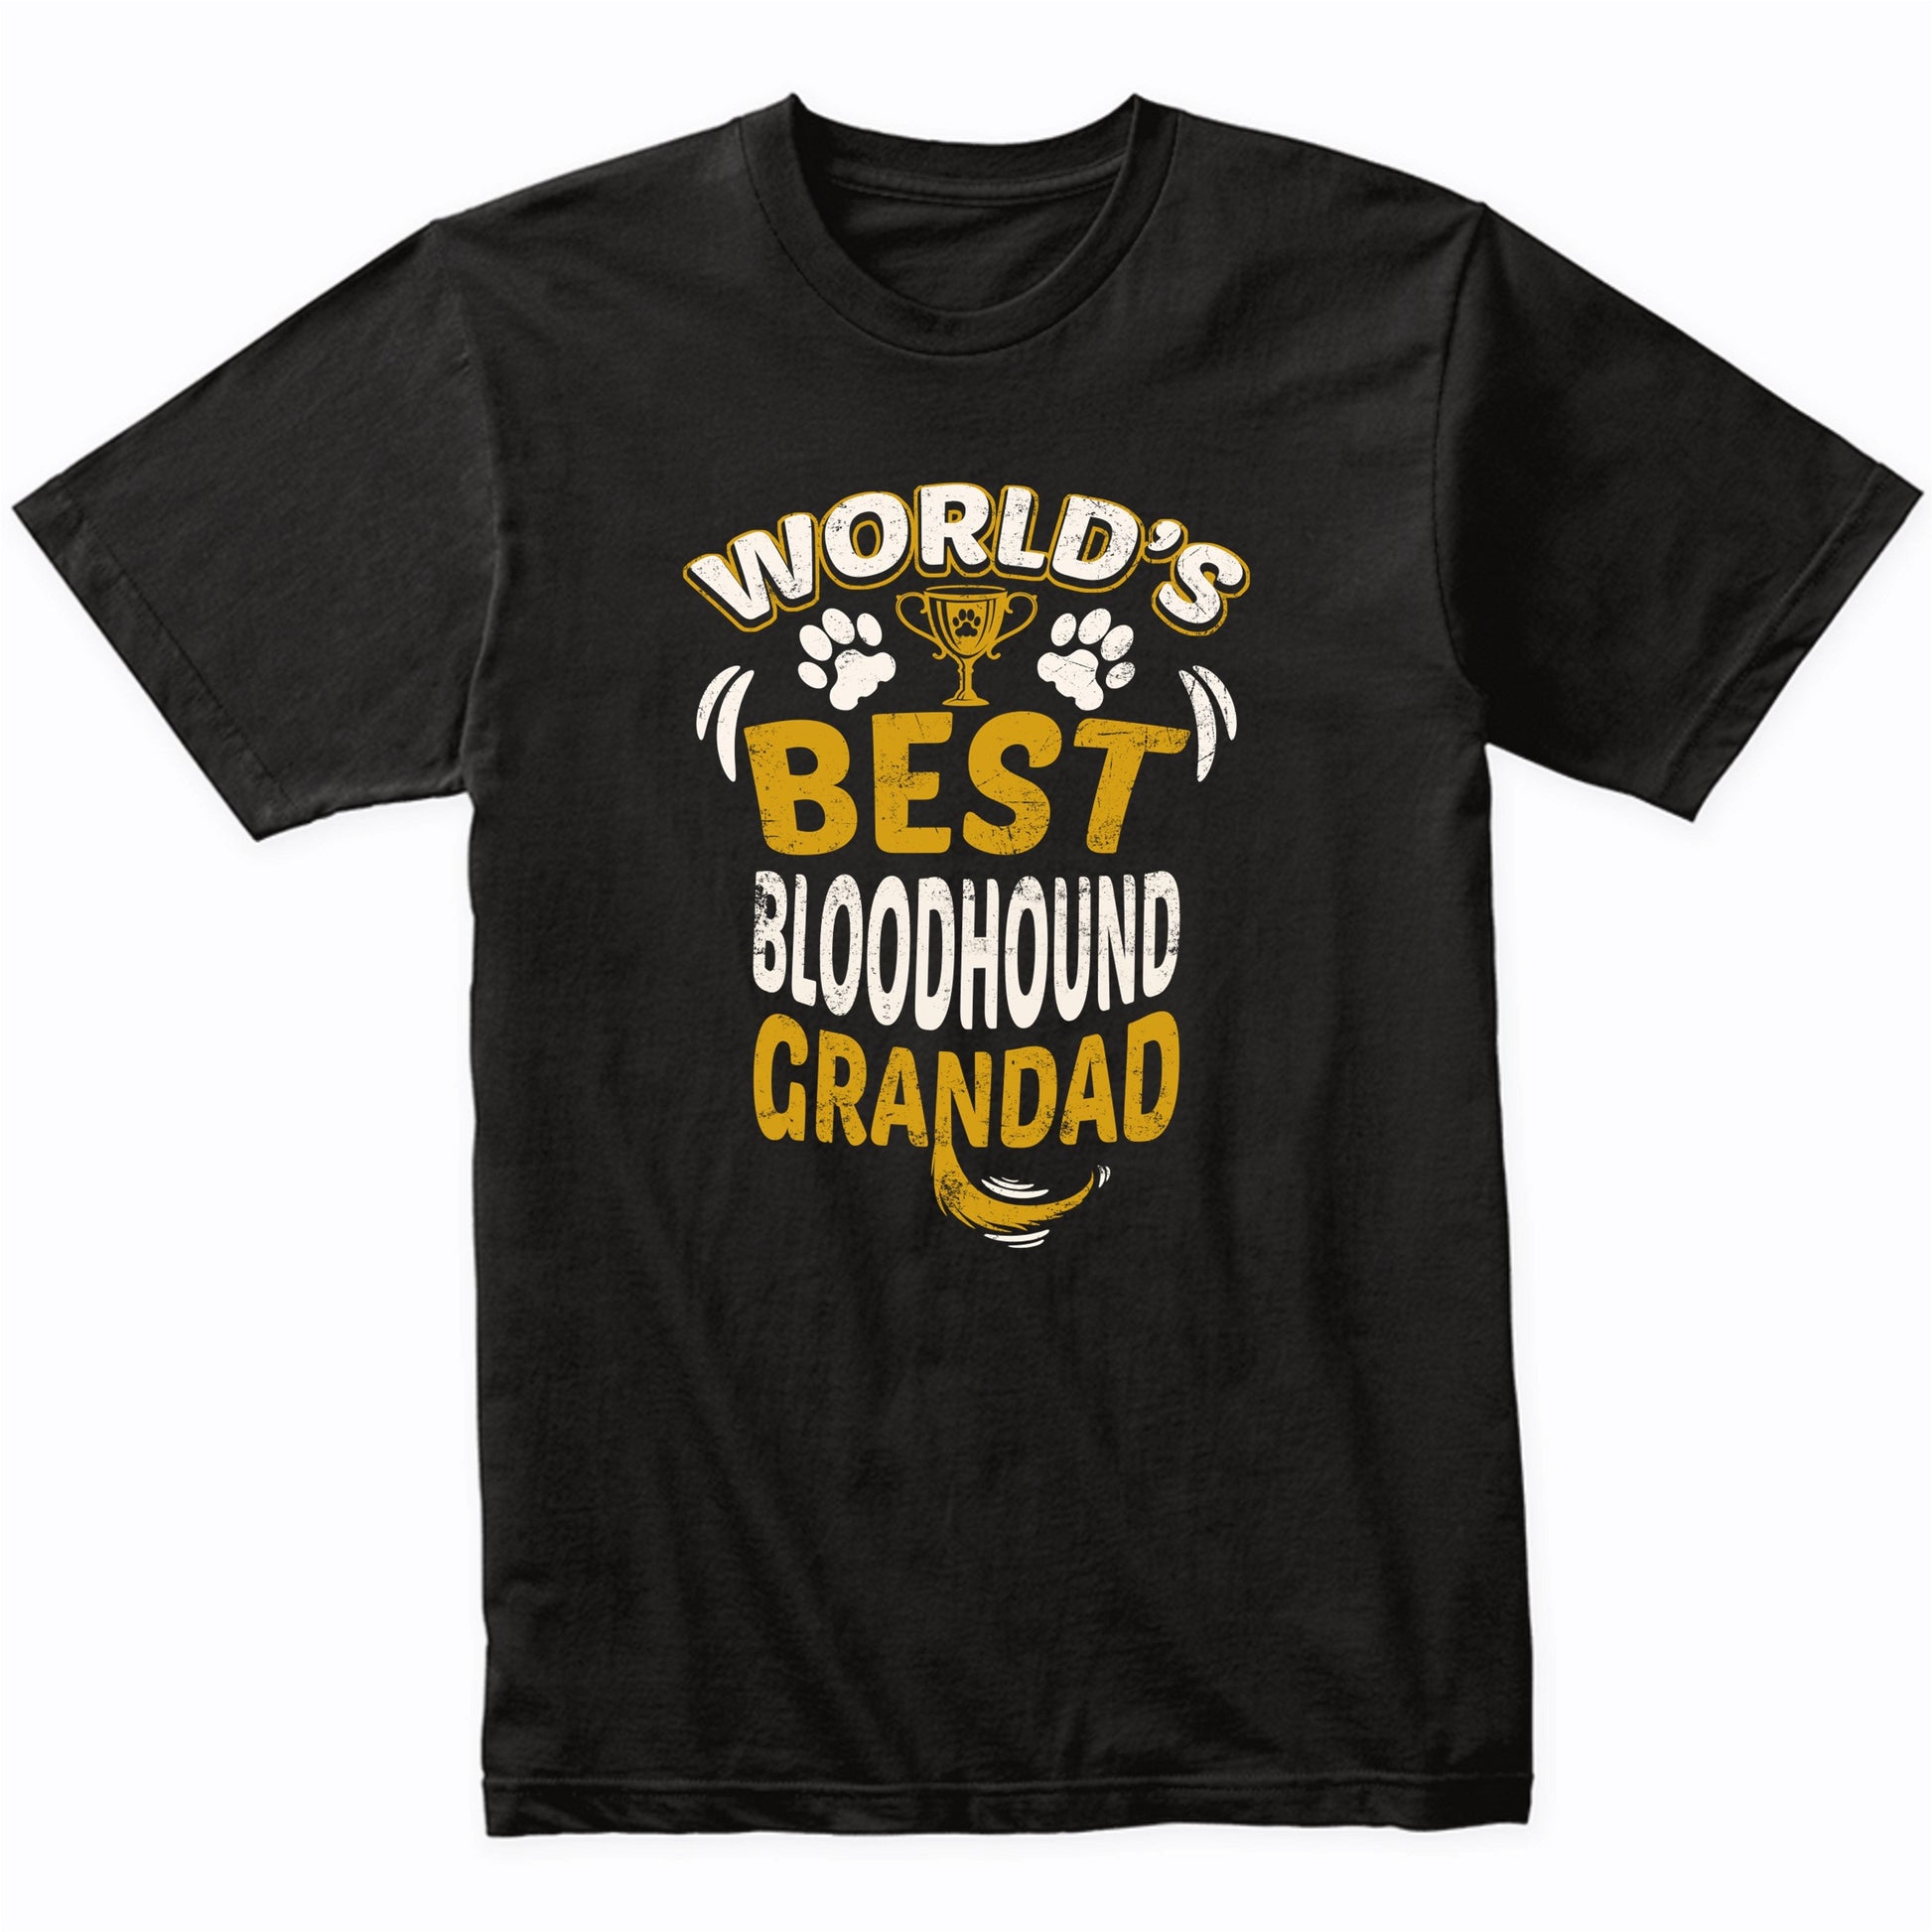 World's Best Bloodhound Grandad Graphic T-Shirt